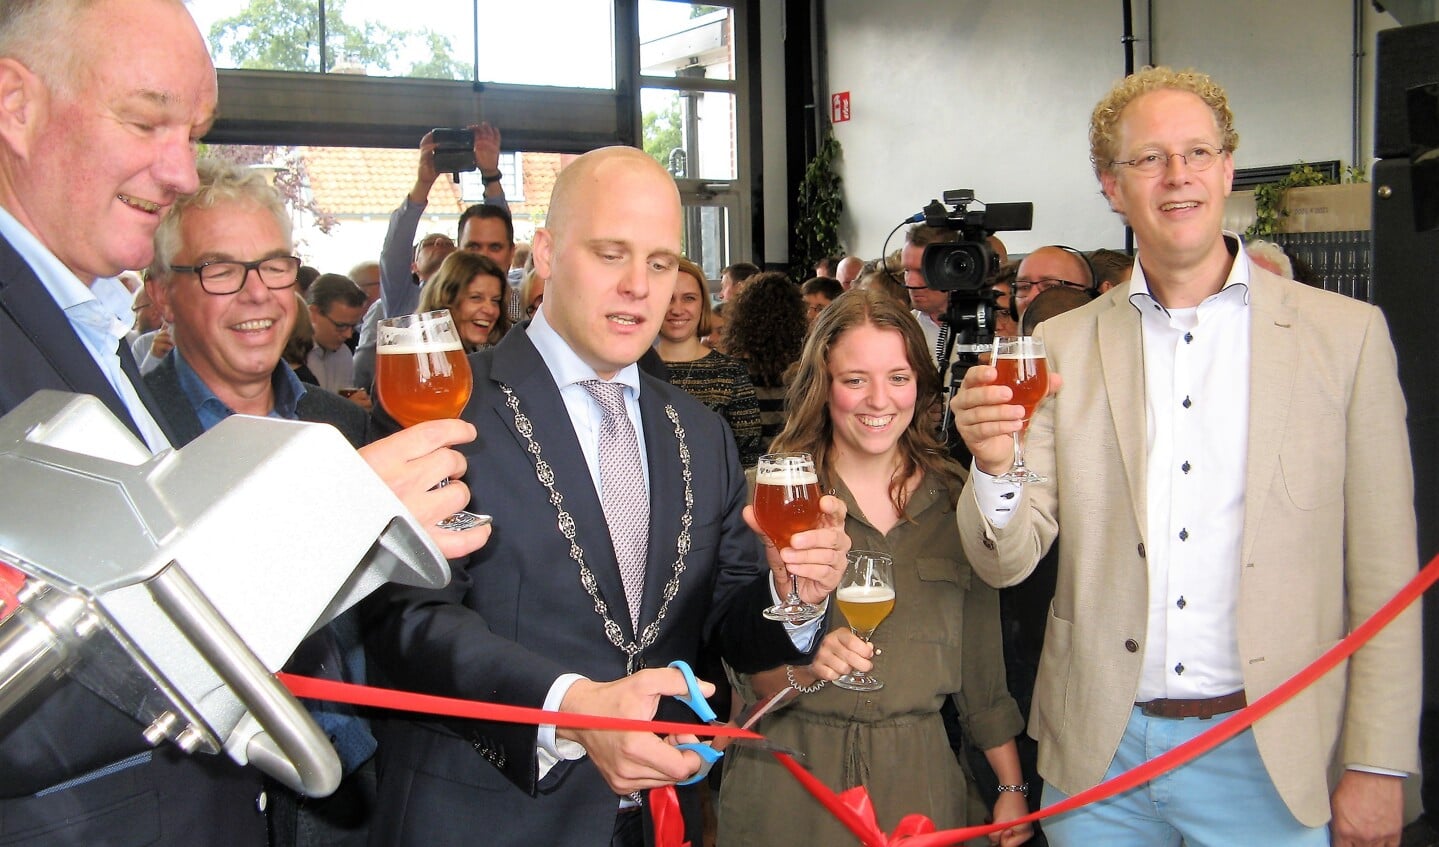 Burgemeester Bengevoord knipt het lint door. Naast hem Bart Looman, Onno Raspe (links), Liset Nusselder en Michiel van der Vaart (rechts). Foto: Bart Kraan